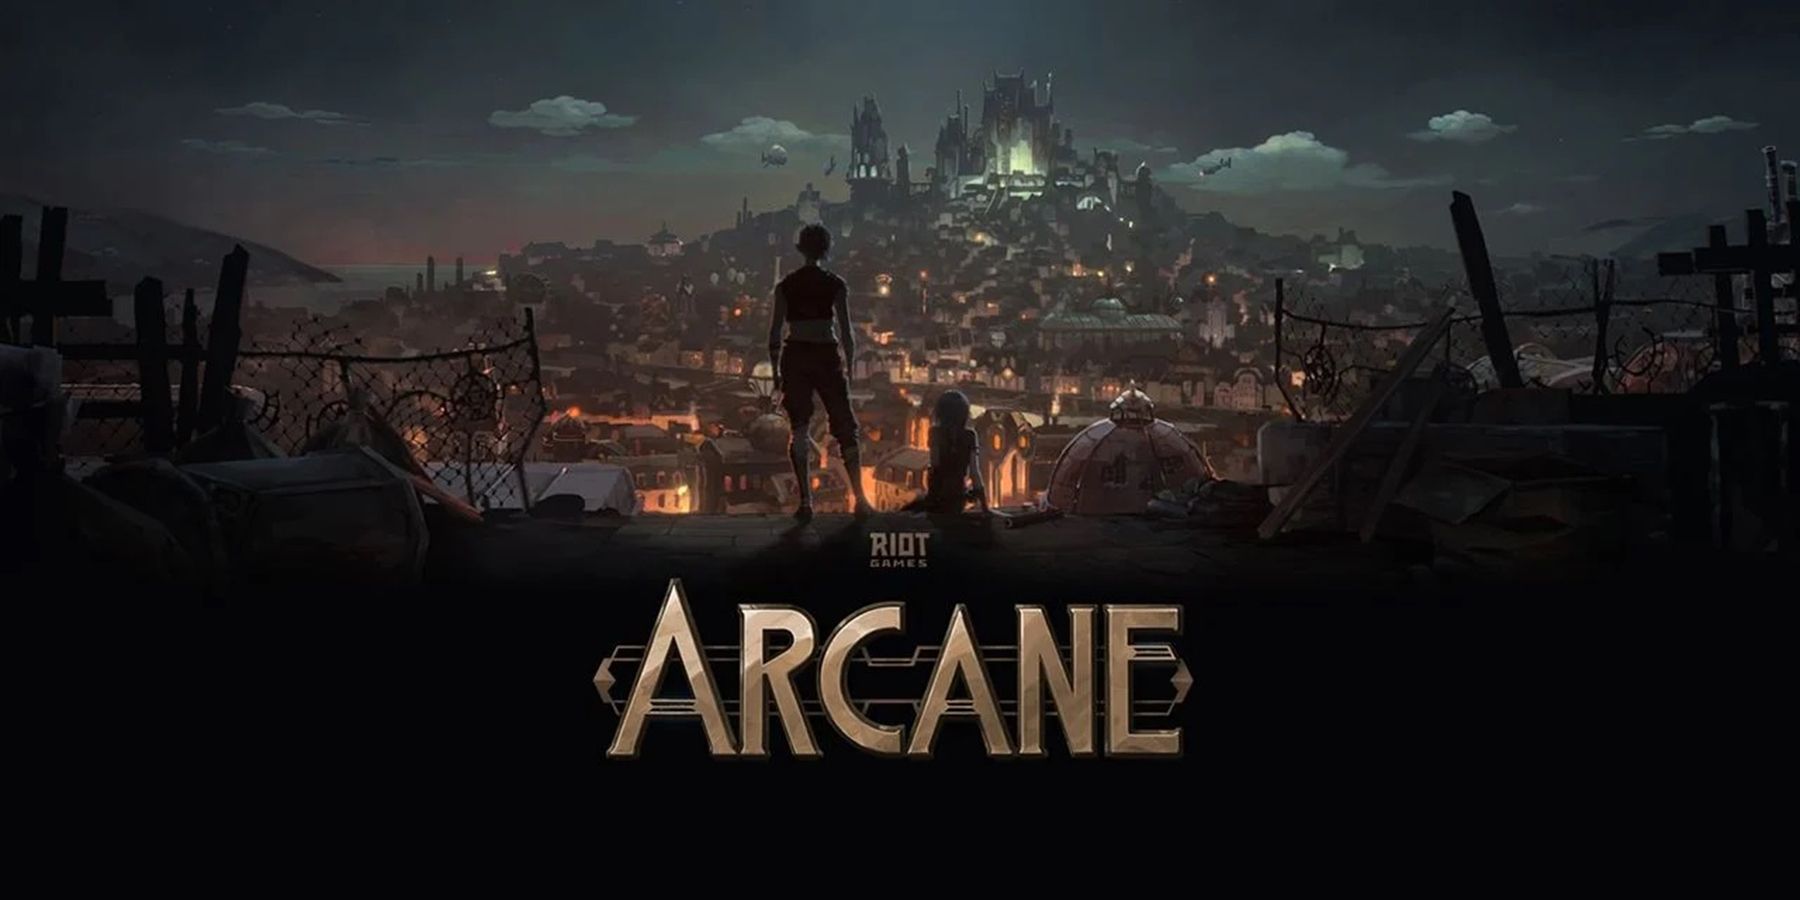 Arcane Trailer menawarkan Glimpse di Siri Legends Netflix’s League